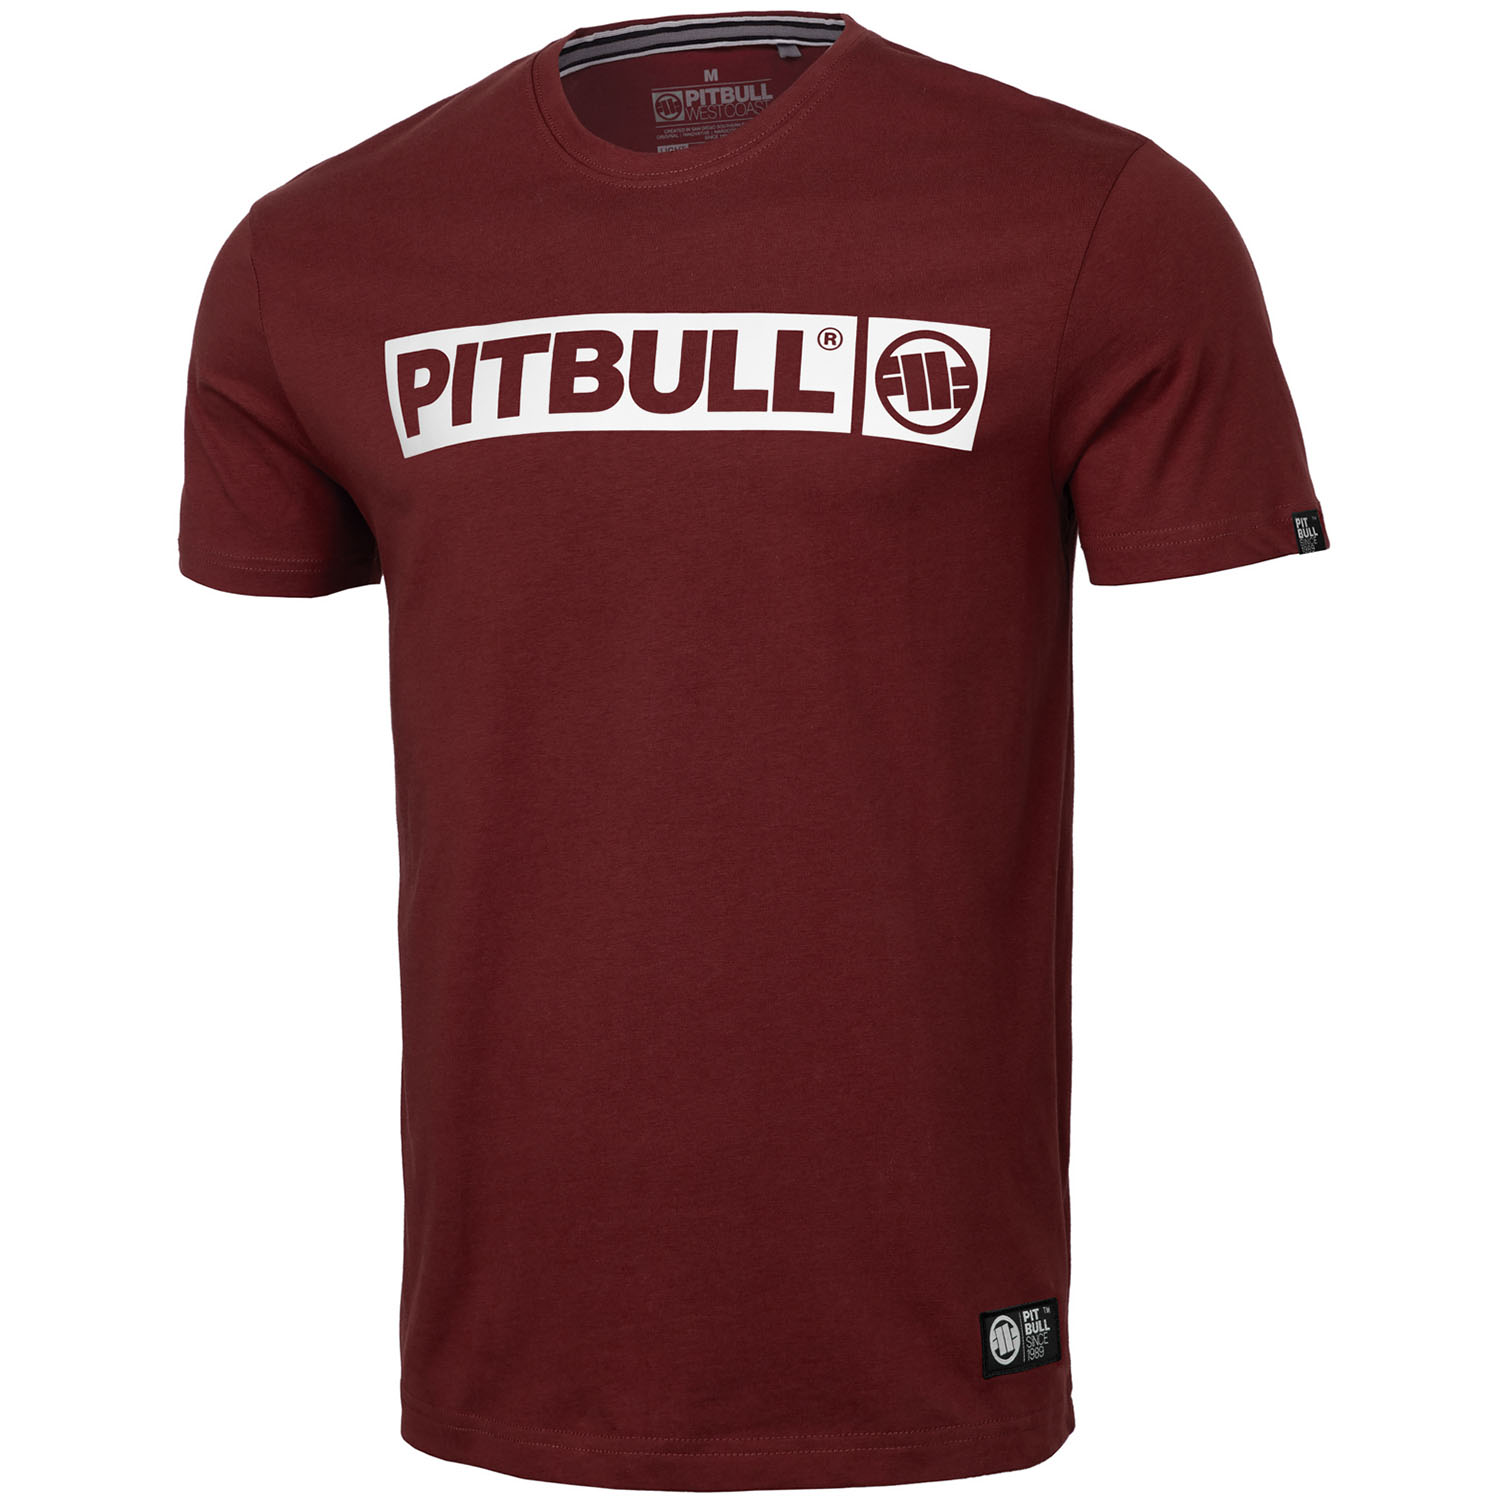 Pit Bull West Coast T-Shirt, Hilltop S70, weinrot